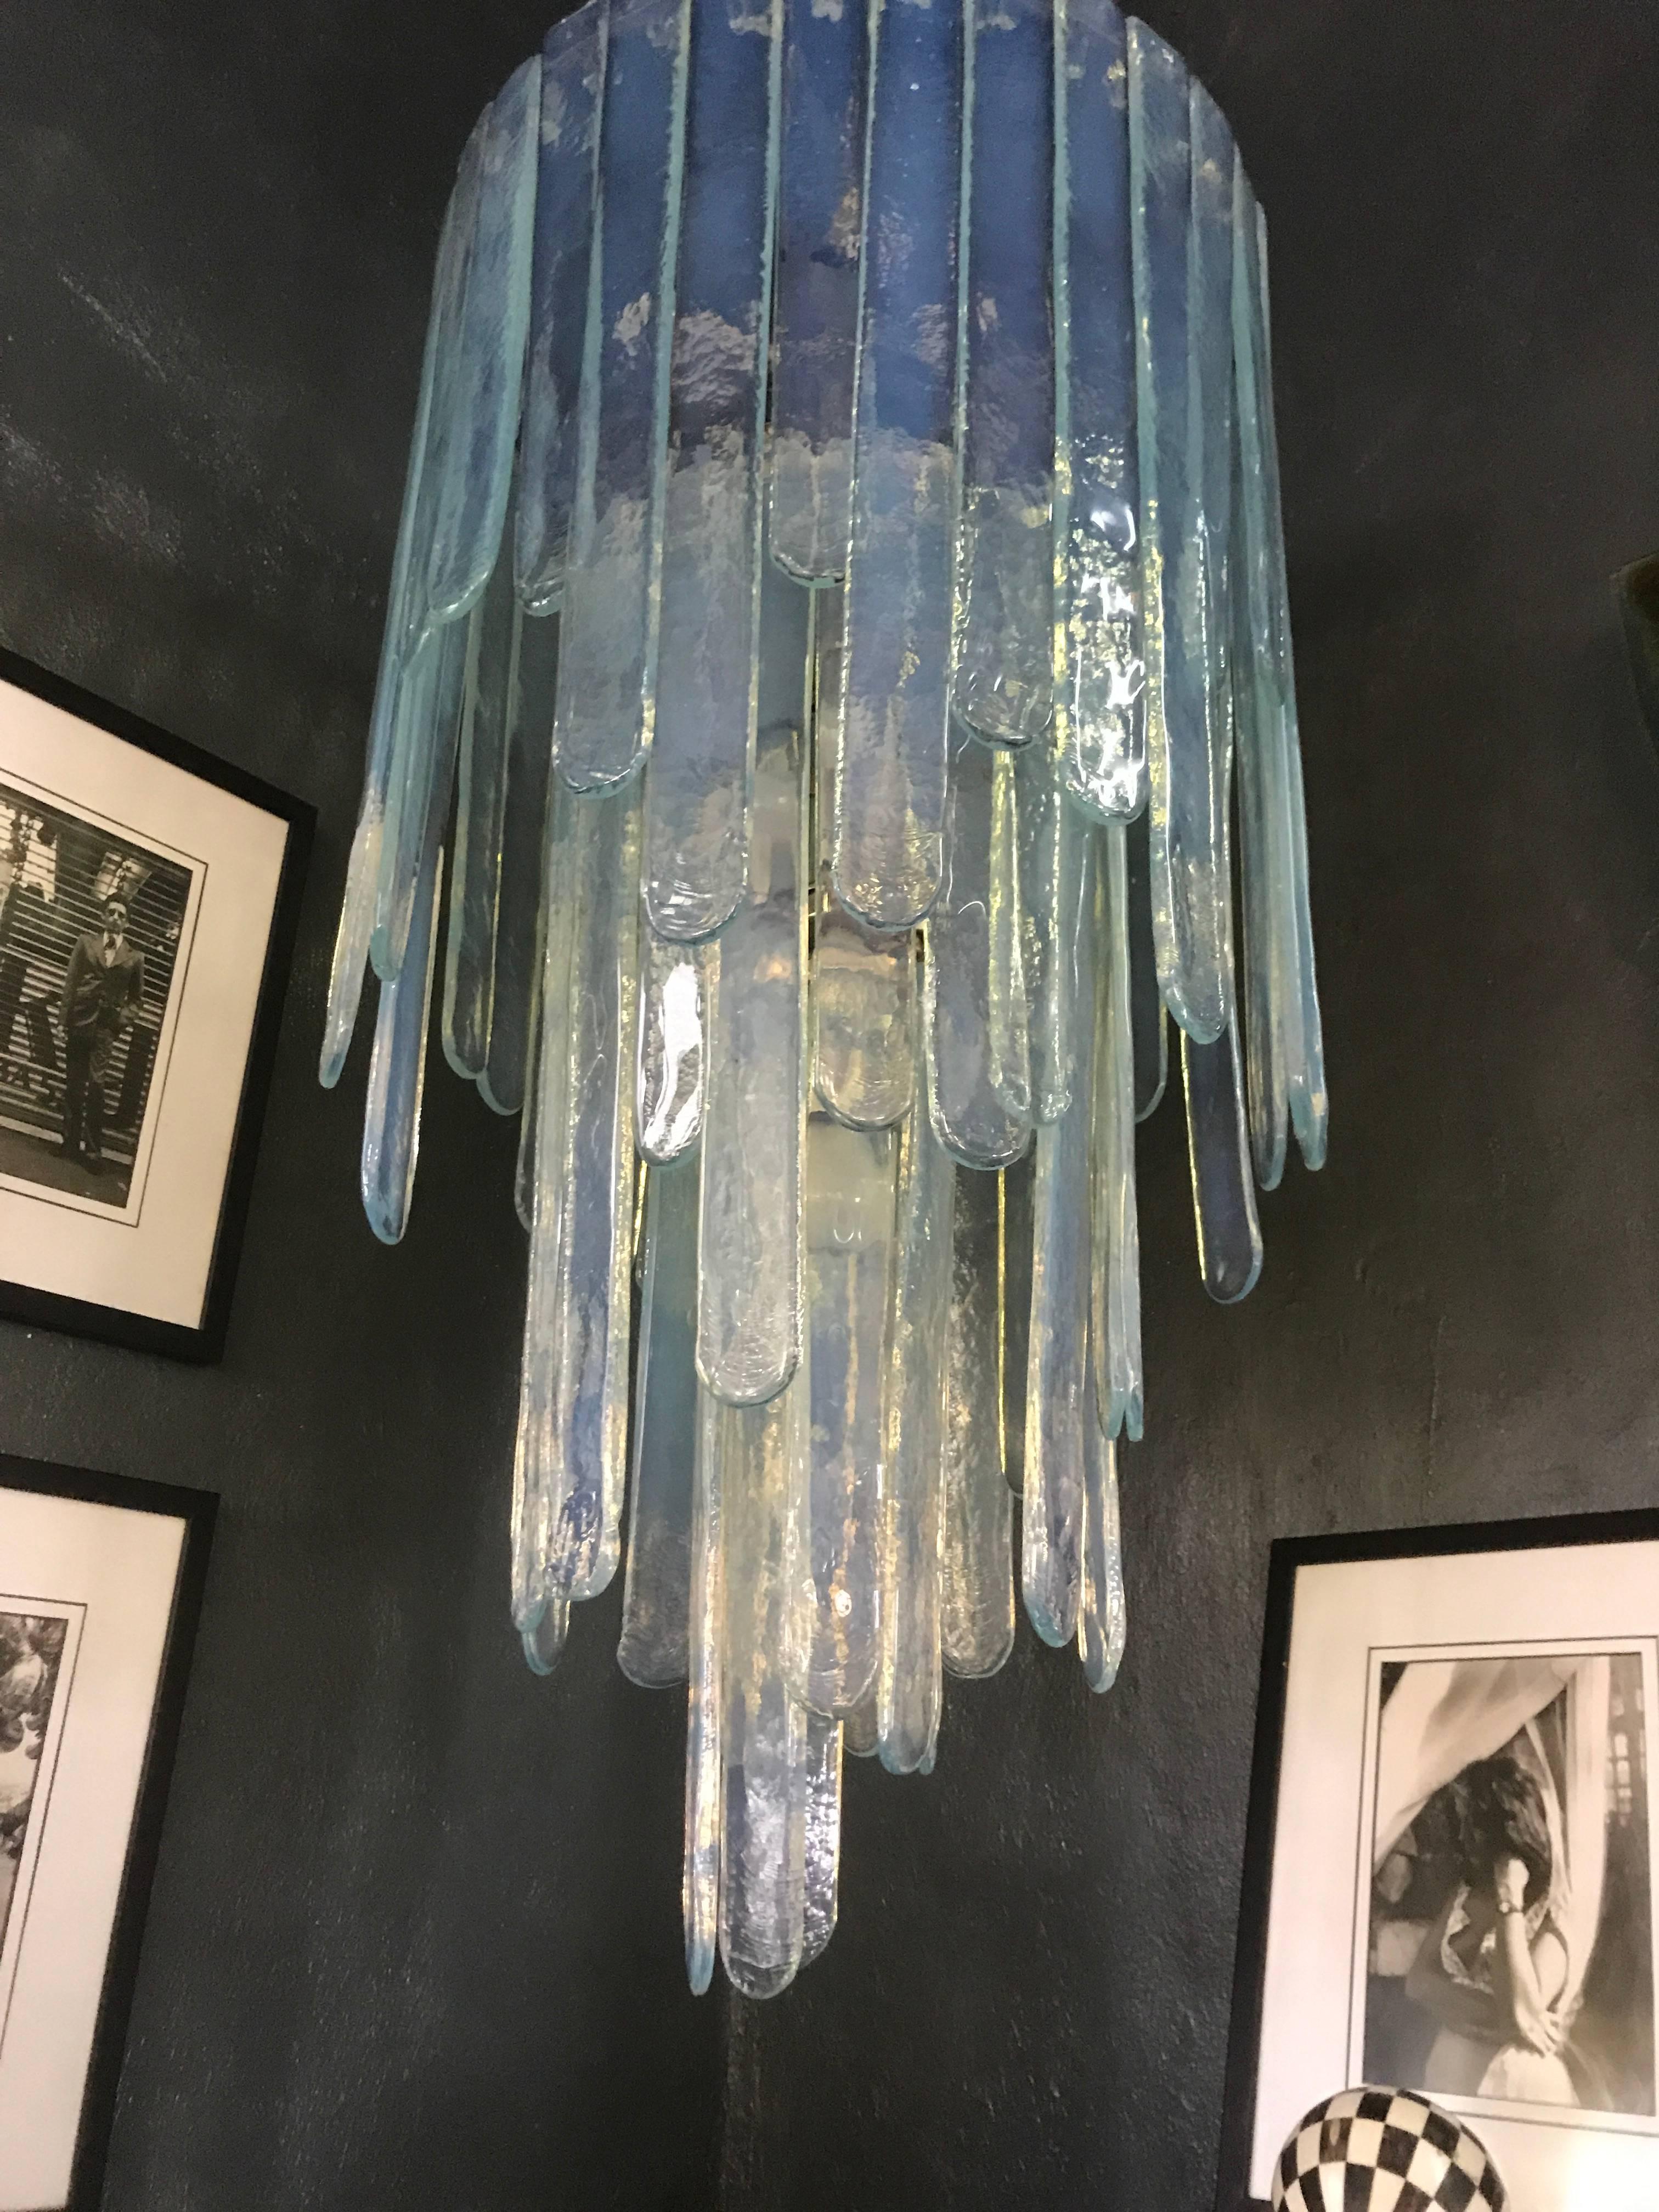 Lustre de style Mid-Century Modern de Carlo Nason pour Mazzega dans une teinte bleue opalescente, composé de trois étages de lames de verre. Ce lustre est complet car il n'y a pas un pouce d'espace libre là où les lames sont suspendues. Il mesure